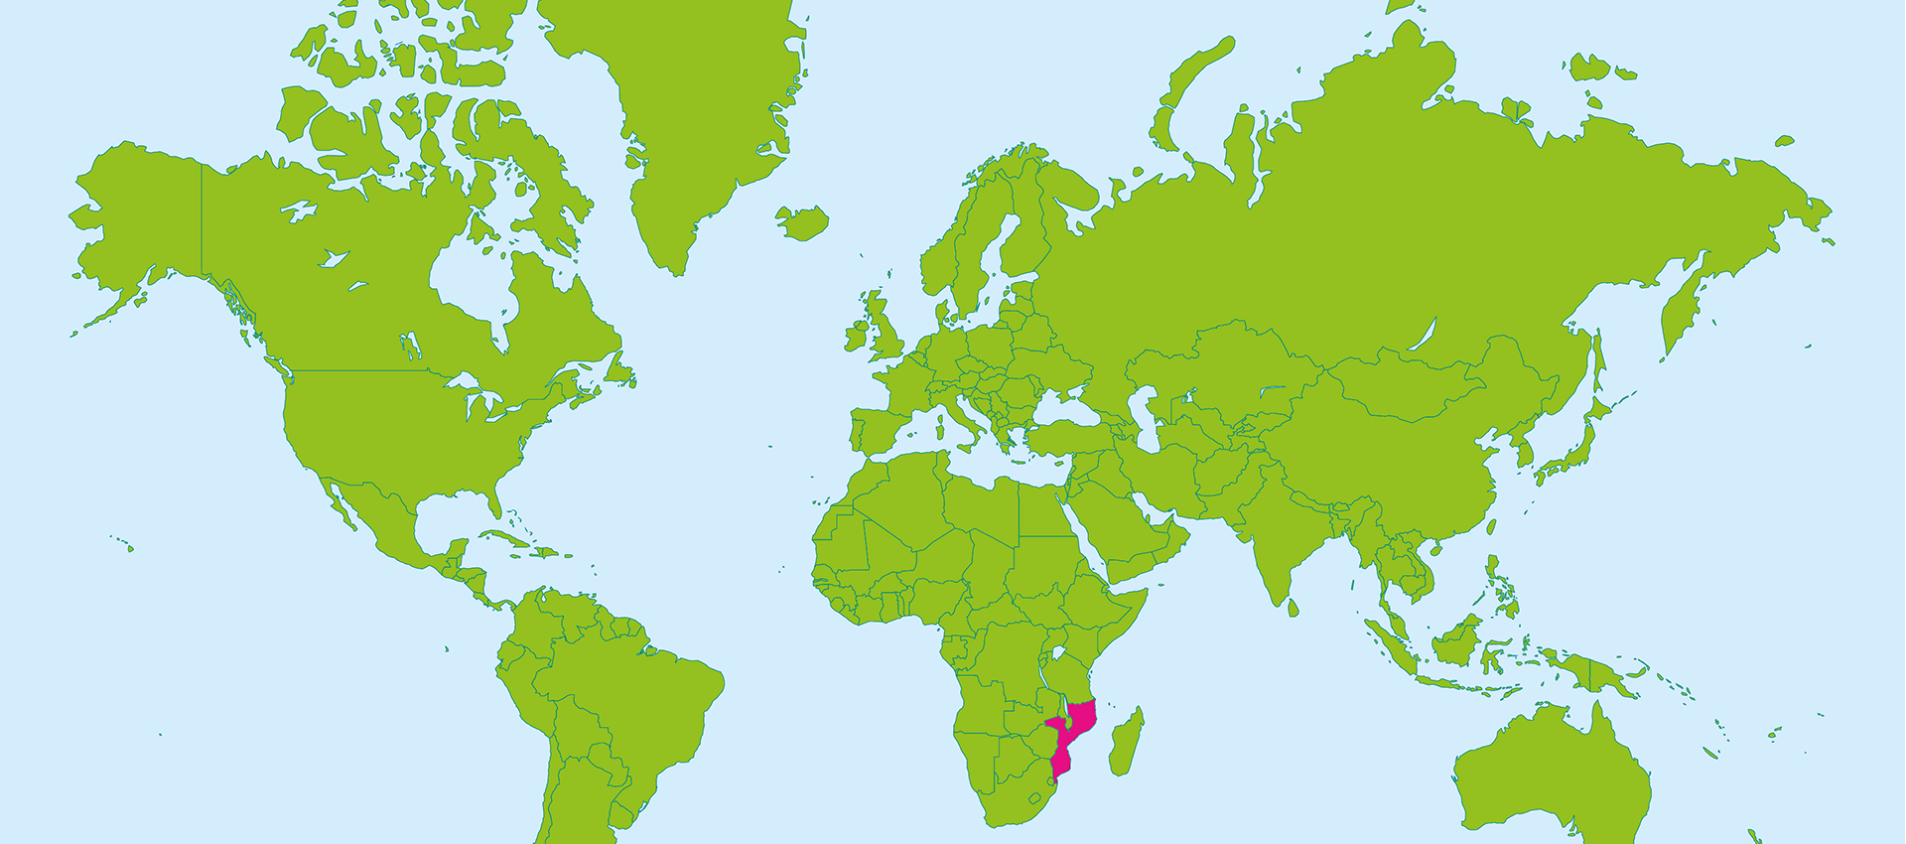 Moçambique ligger i sydöstra Afrika.